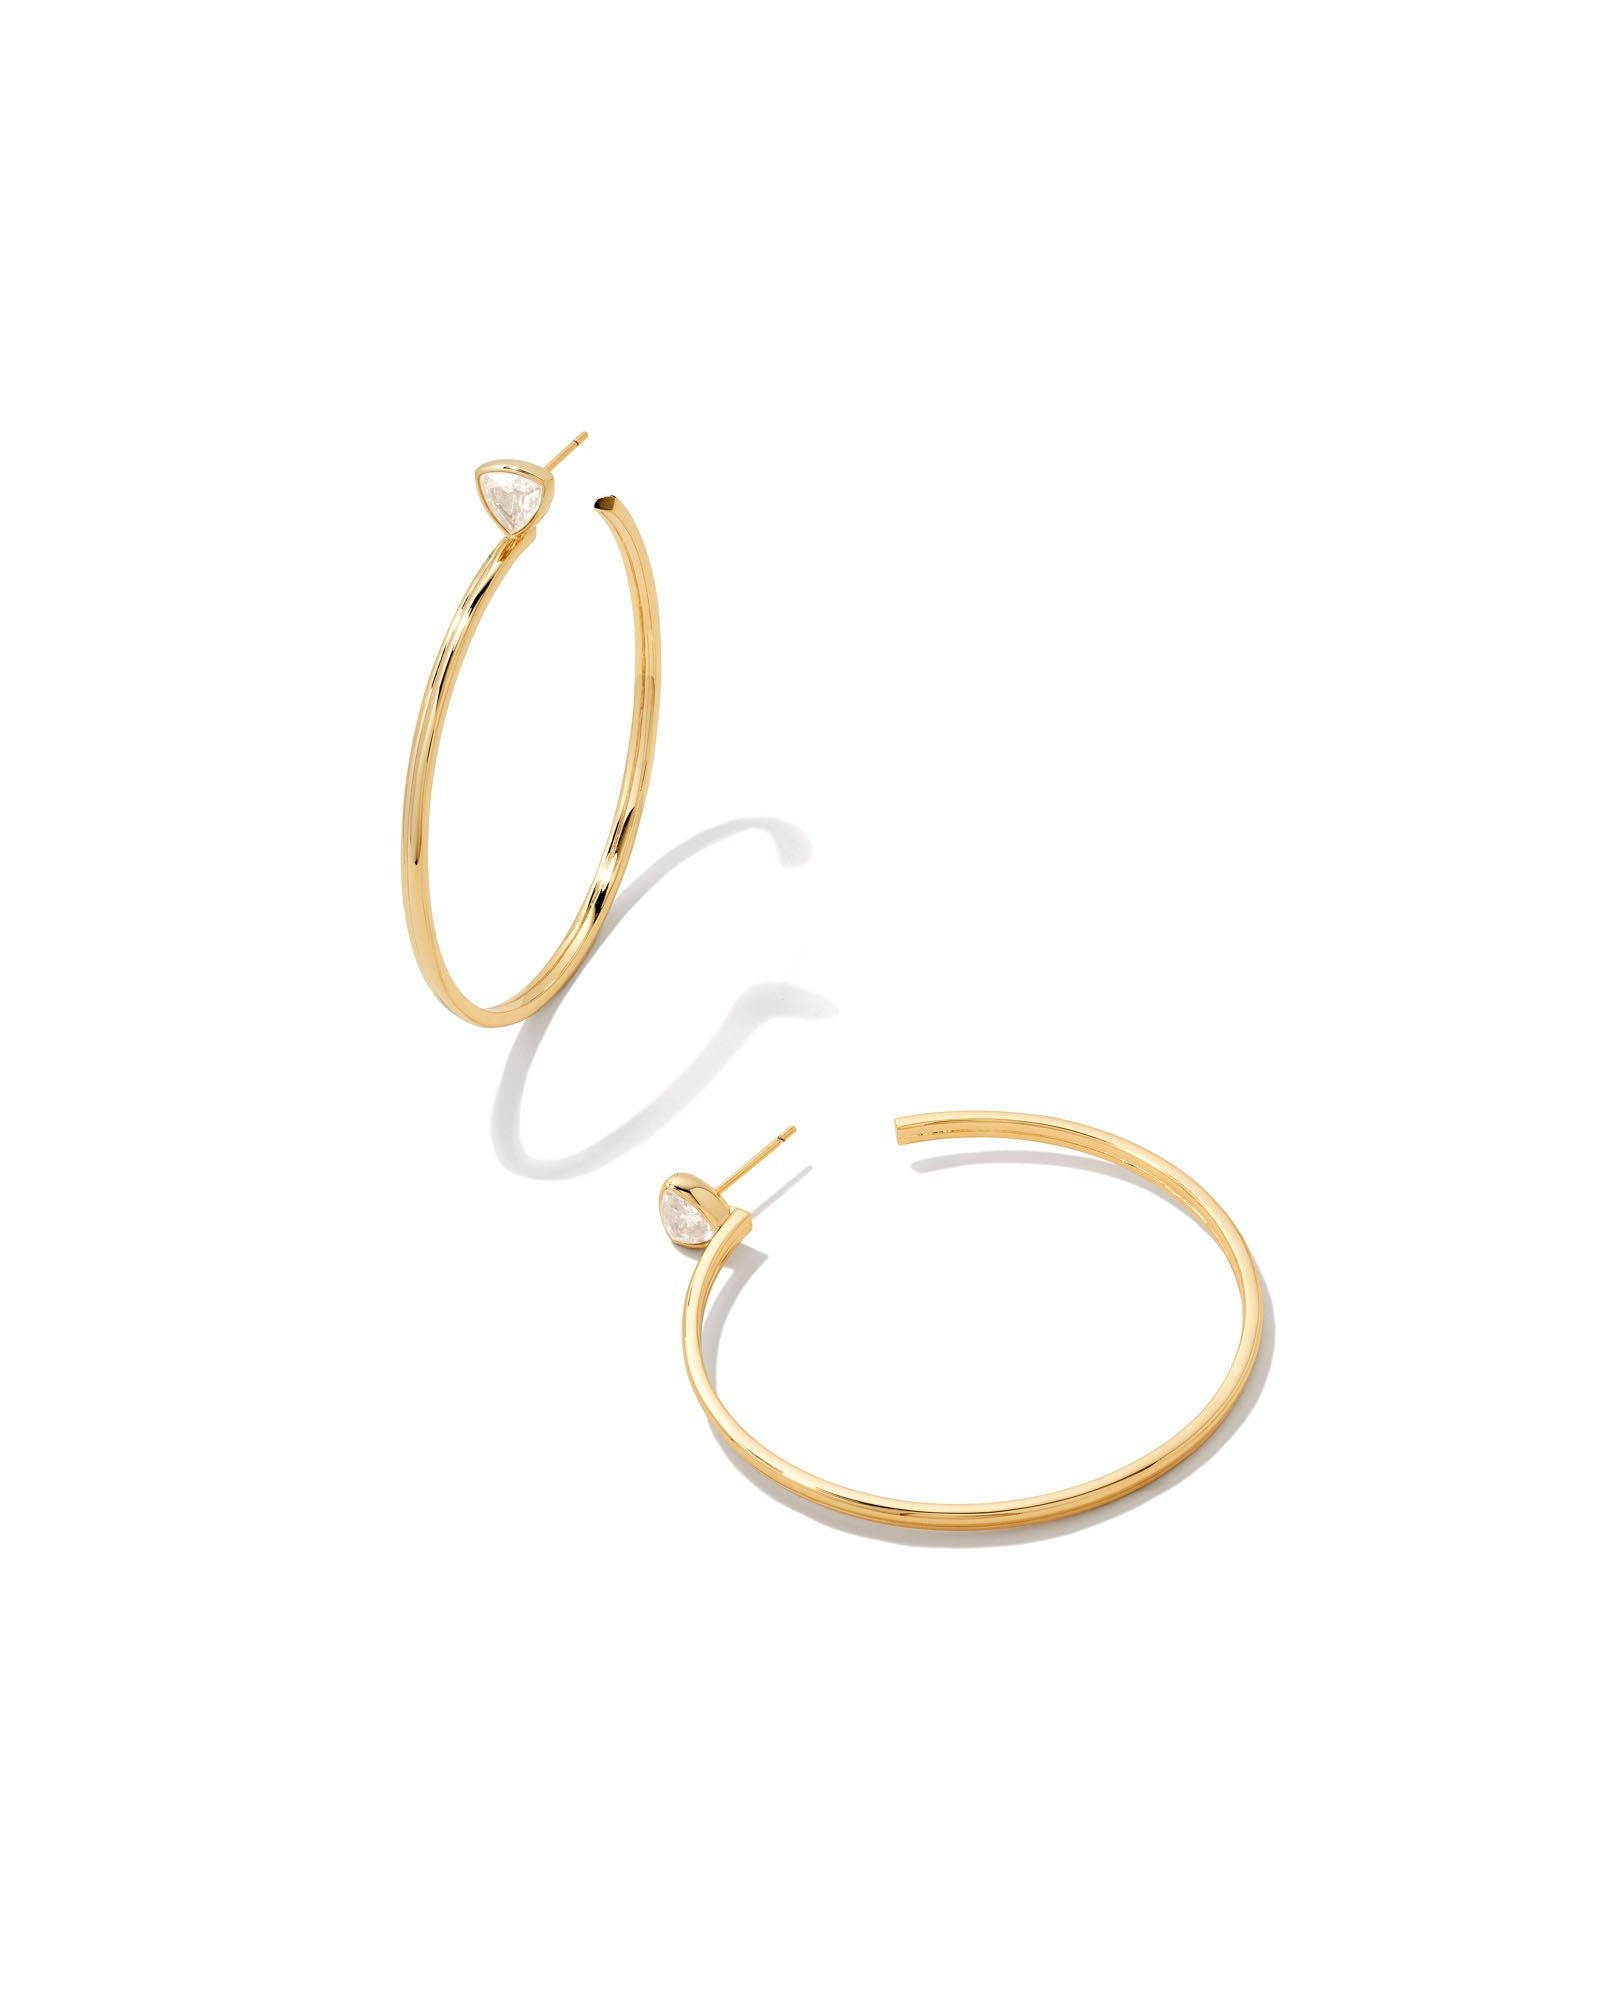 Kendra Scott Arden Hoop Earrings Gold White Crystal-Earrings-Kendra Scott-E1957GLD-The Twisted Chandelier